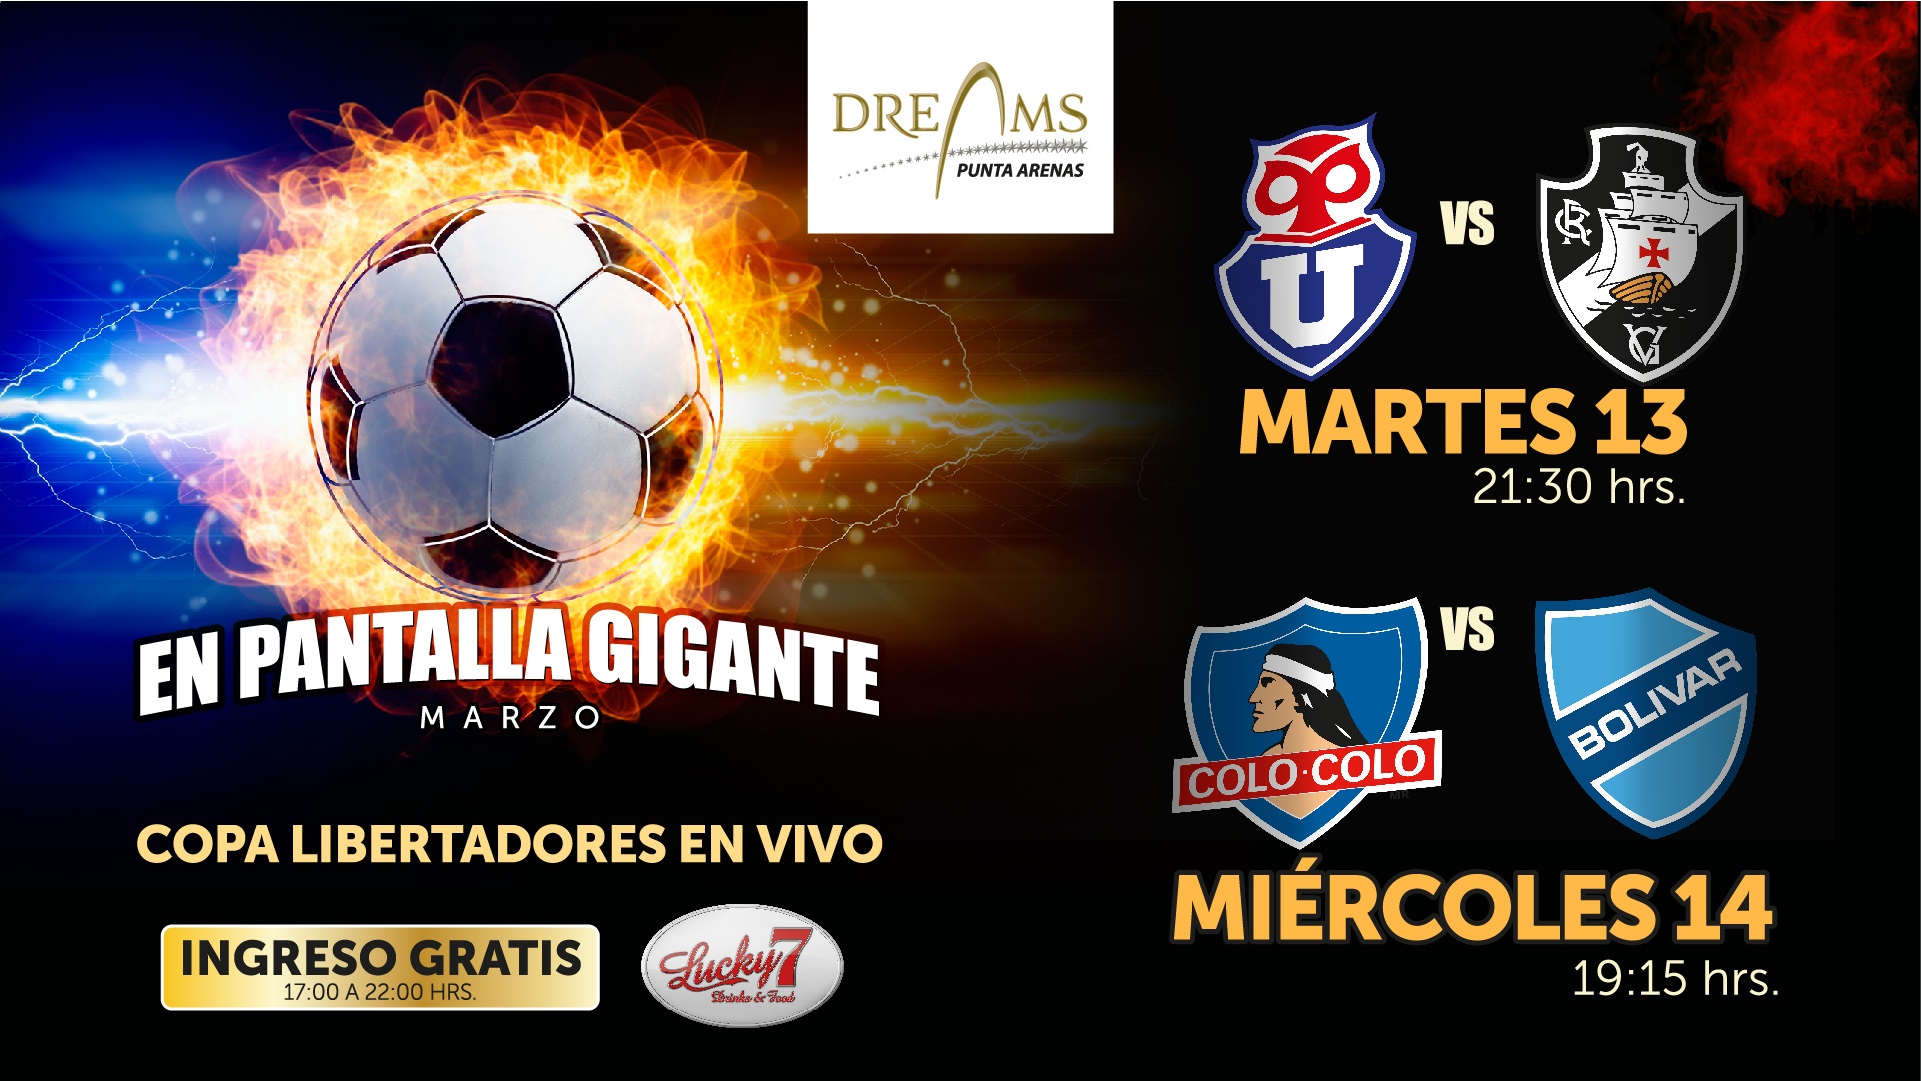 Martes 13 y miércoles 14 en Casino Dreams la Copa Libertadores en pantalla gigante